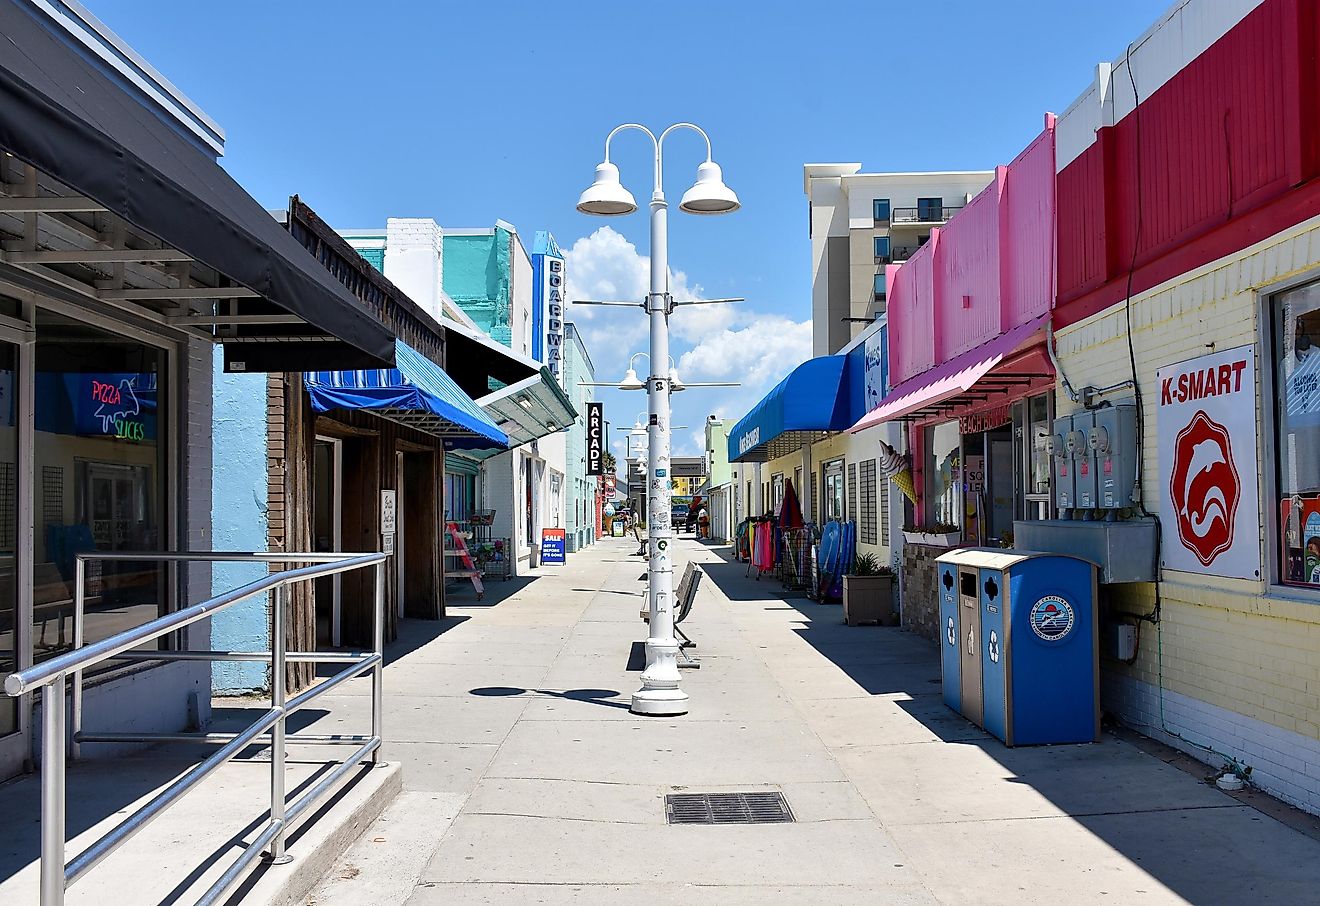 Carolina Beach Boardwalk with shops and restaurants, Carolina Beach, North Carolina